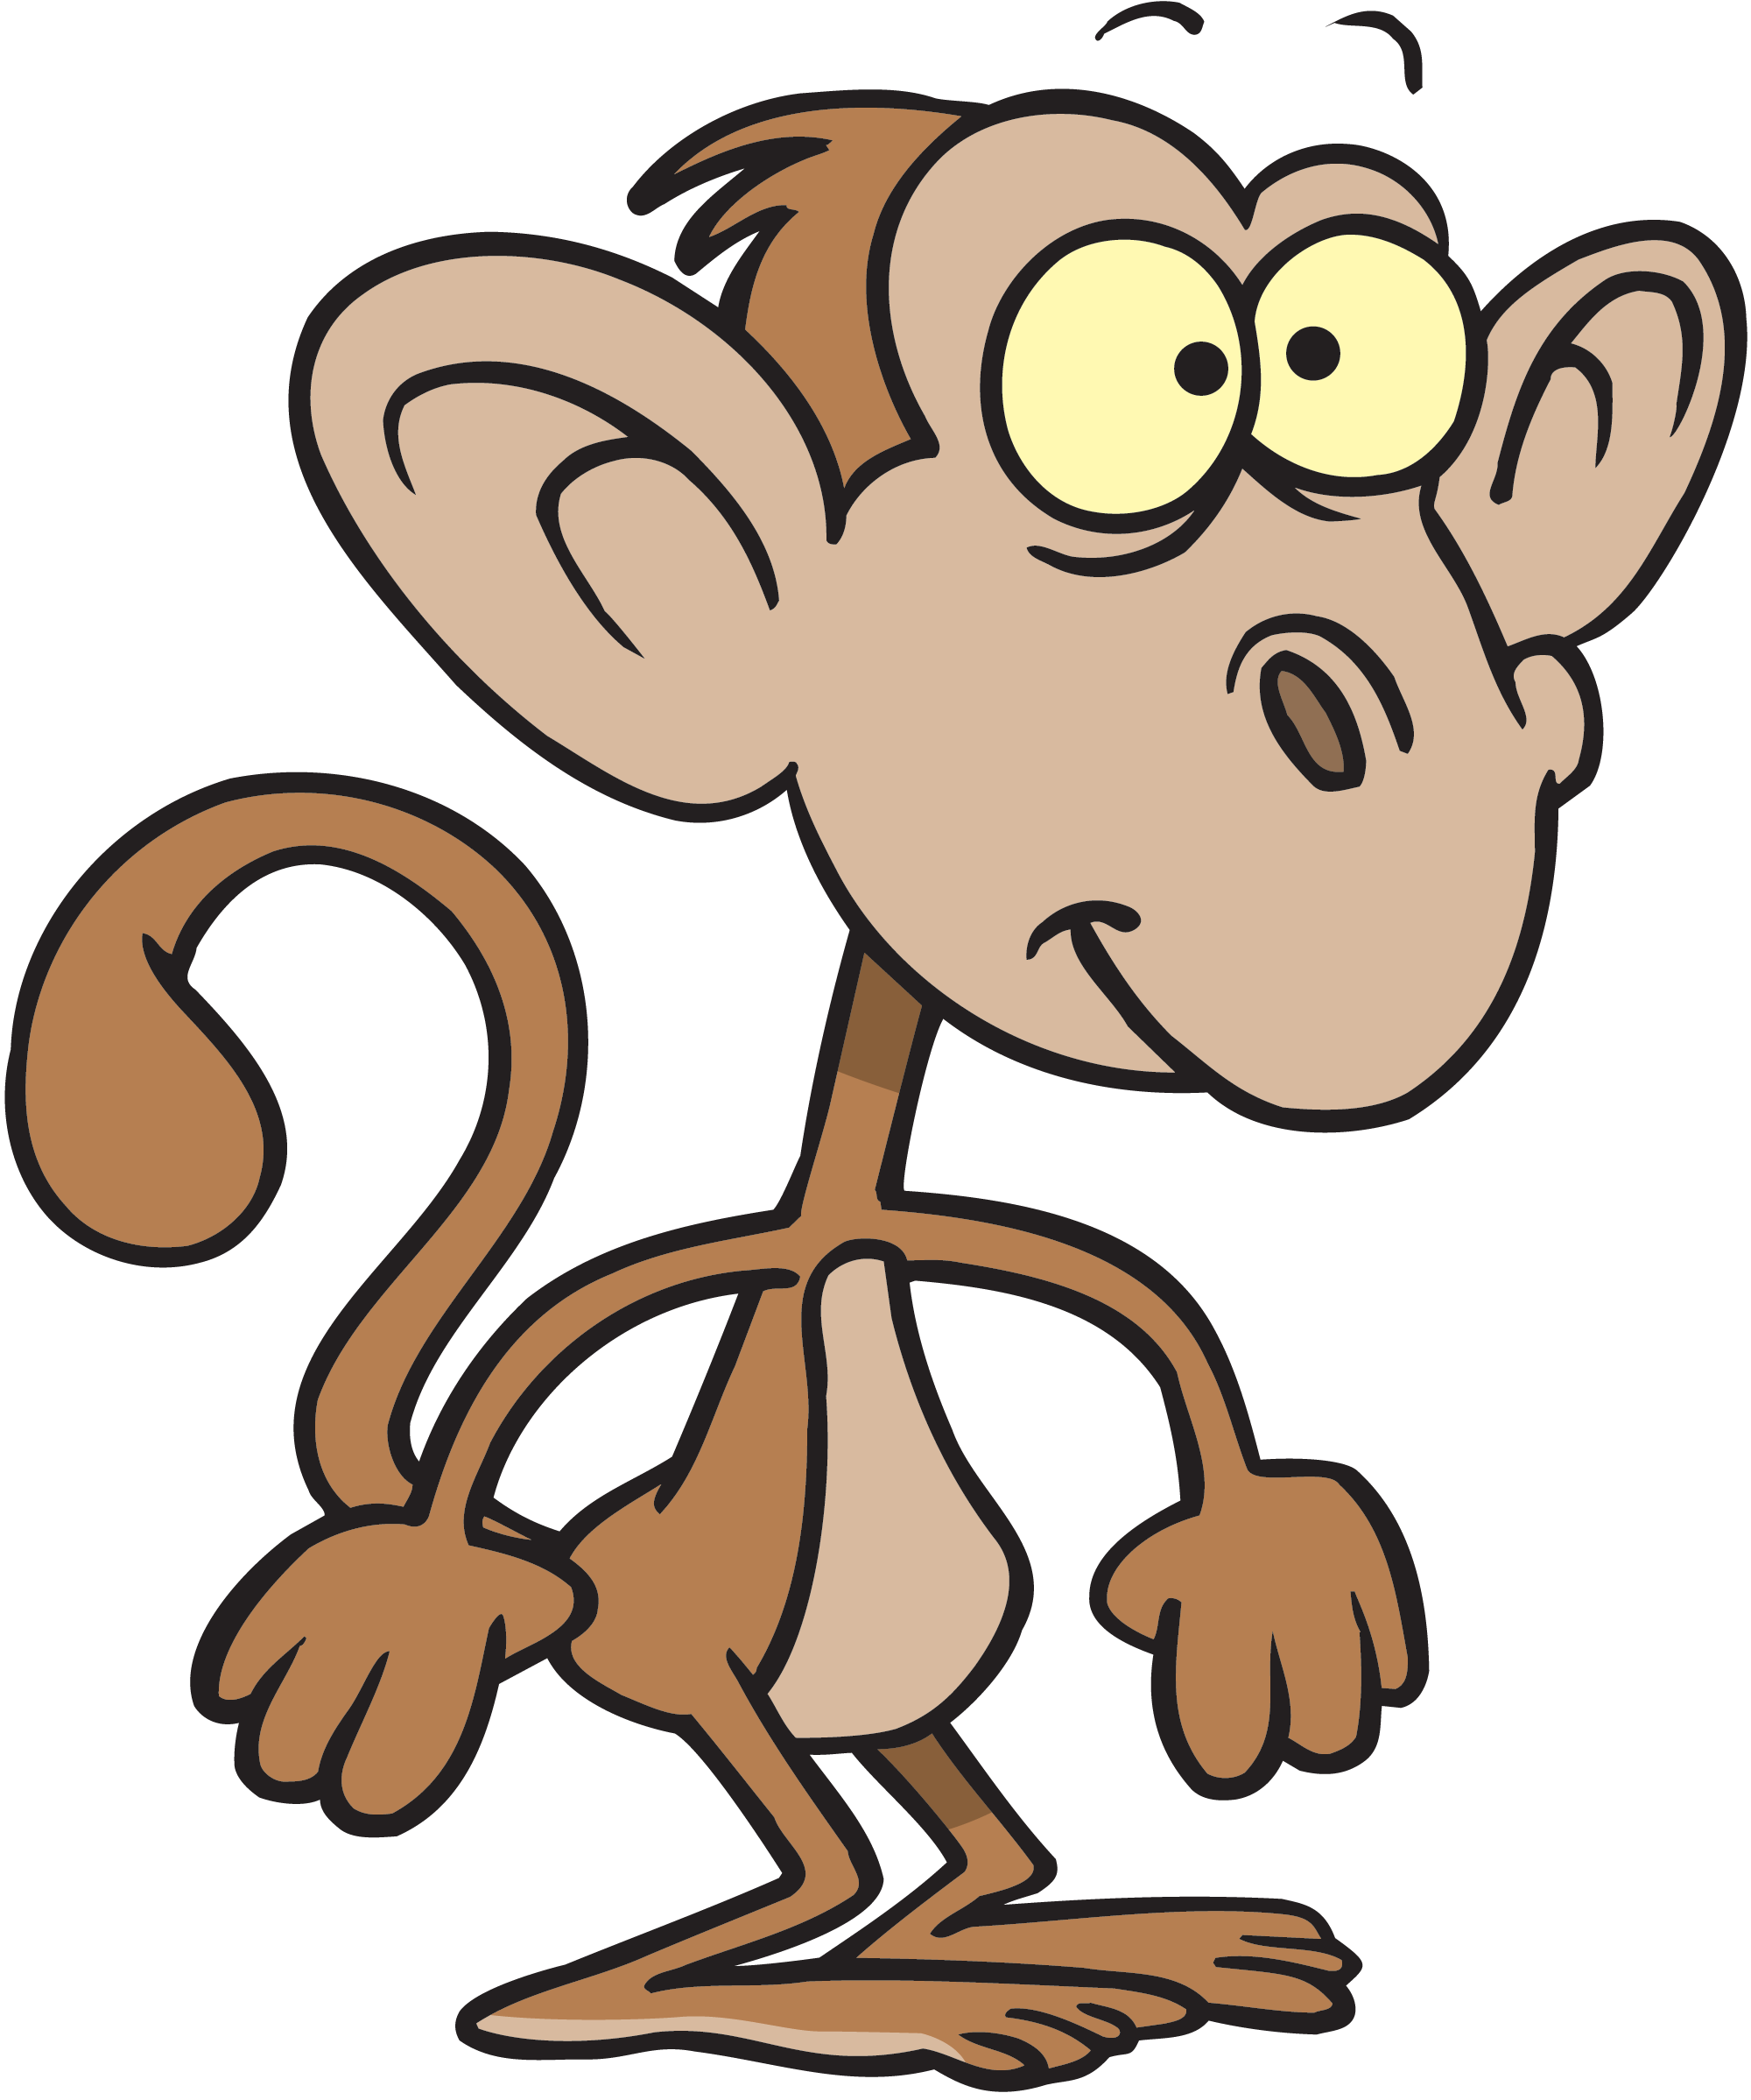 Cartoon Monkey Image - Cliparts.co